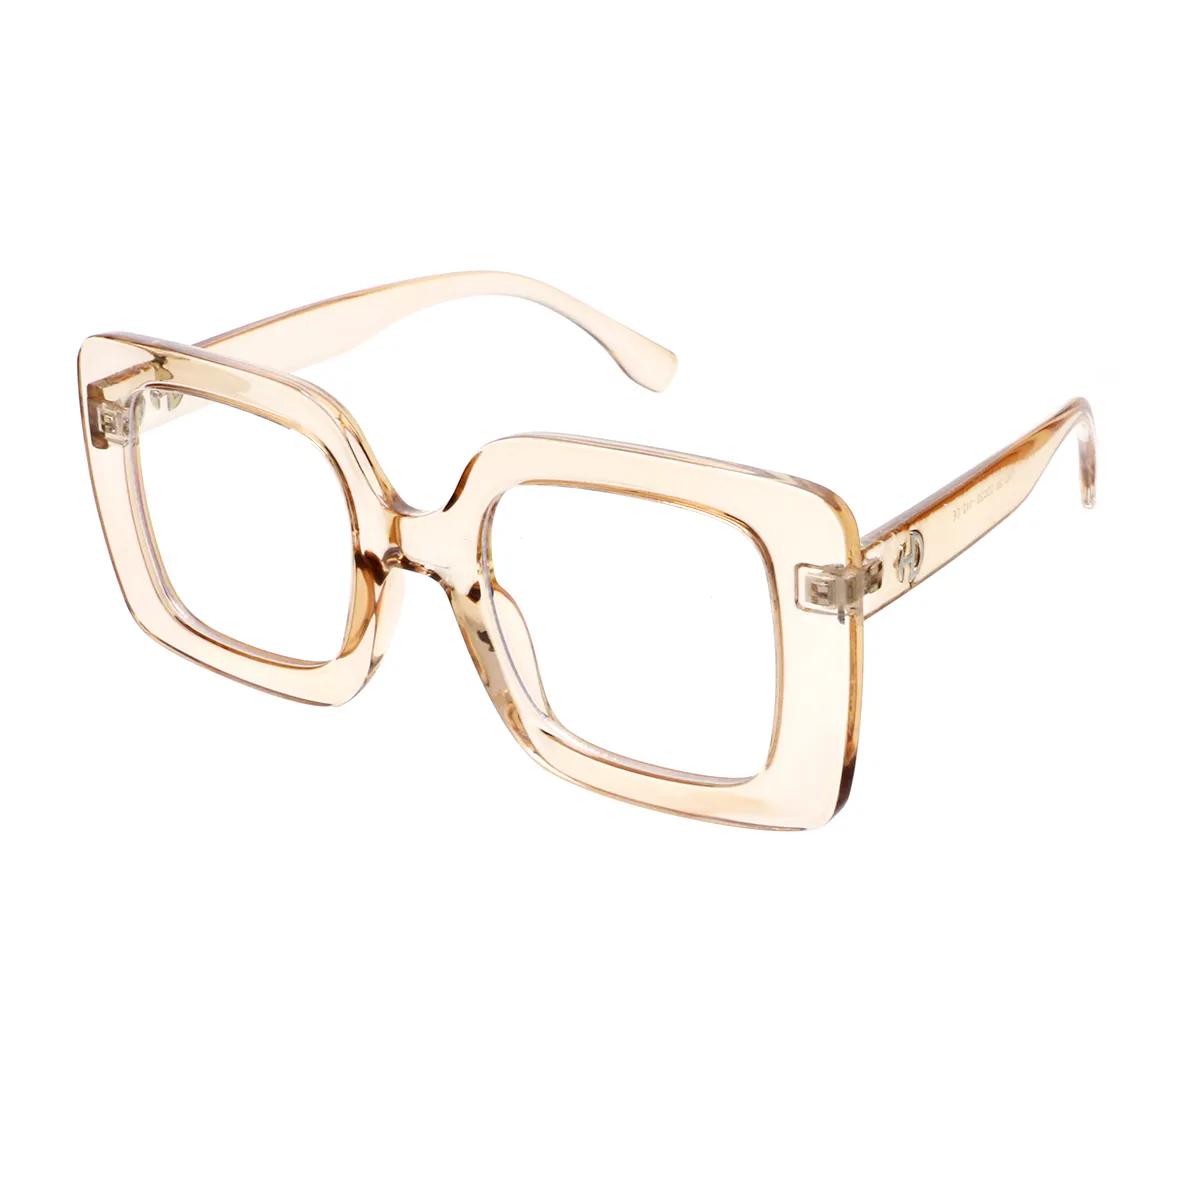 Dahlia - Square Transparent-Brown Glasses for Women - EFE